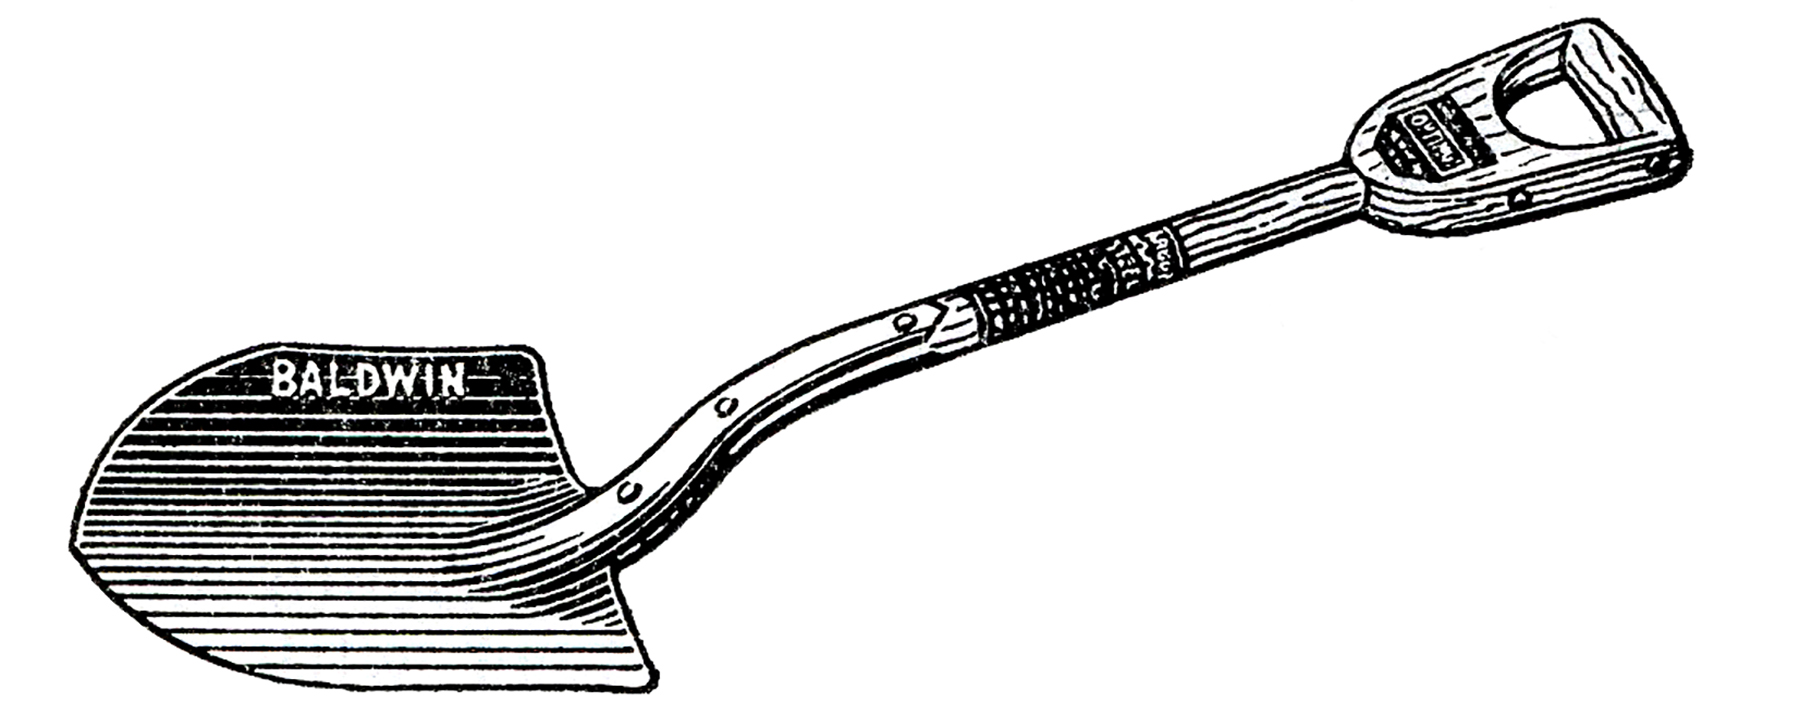 Illustration Of A Shovel